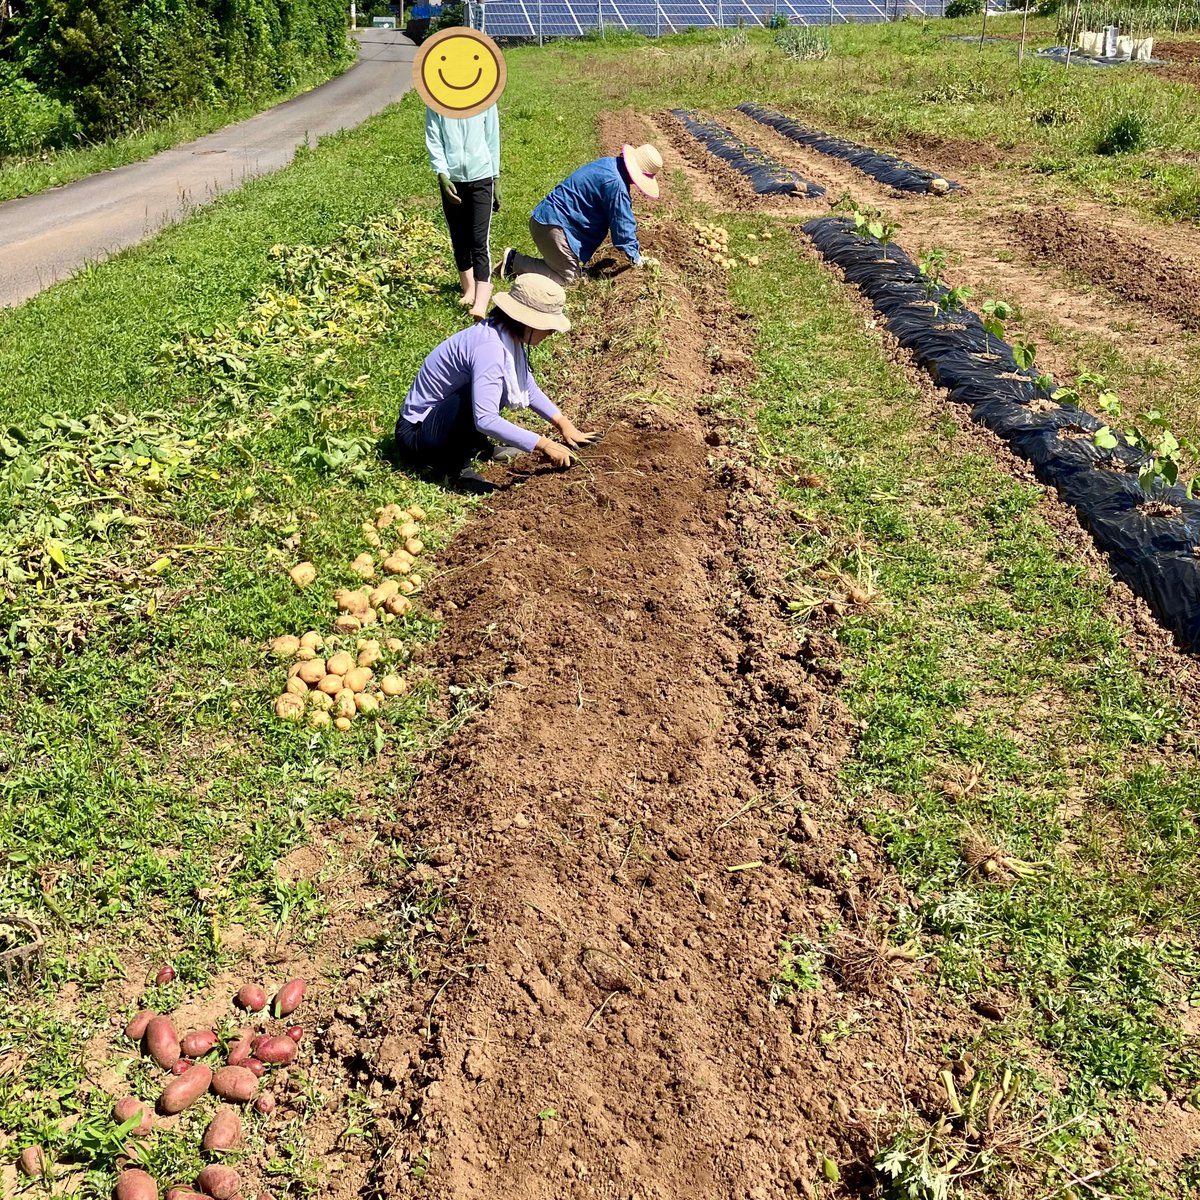 ジャガイモ、掘りました！

10mの畝3本で、これくらい収穫できました！

食べきれないので、まわりに配りたいと思います。

みなさん、収穫したジャガイモの保存はどうしていますか？

#ジャガイモ
#ドラゴンレッド
#西海31号
#普賢丸
#ニシユタカ
#家庭菜園
#農業
#ガーデニング
#農家
#長崎